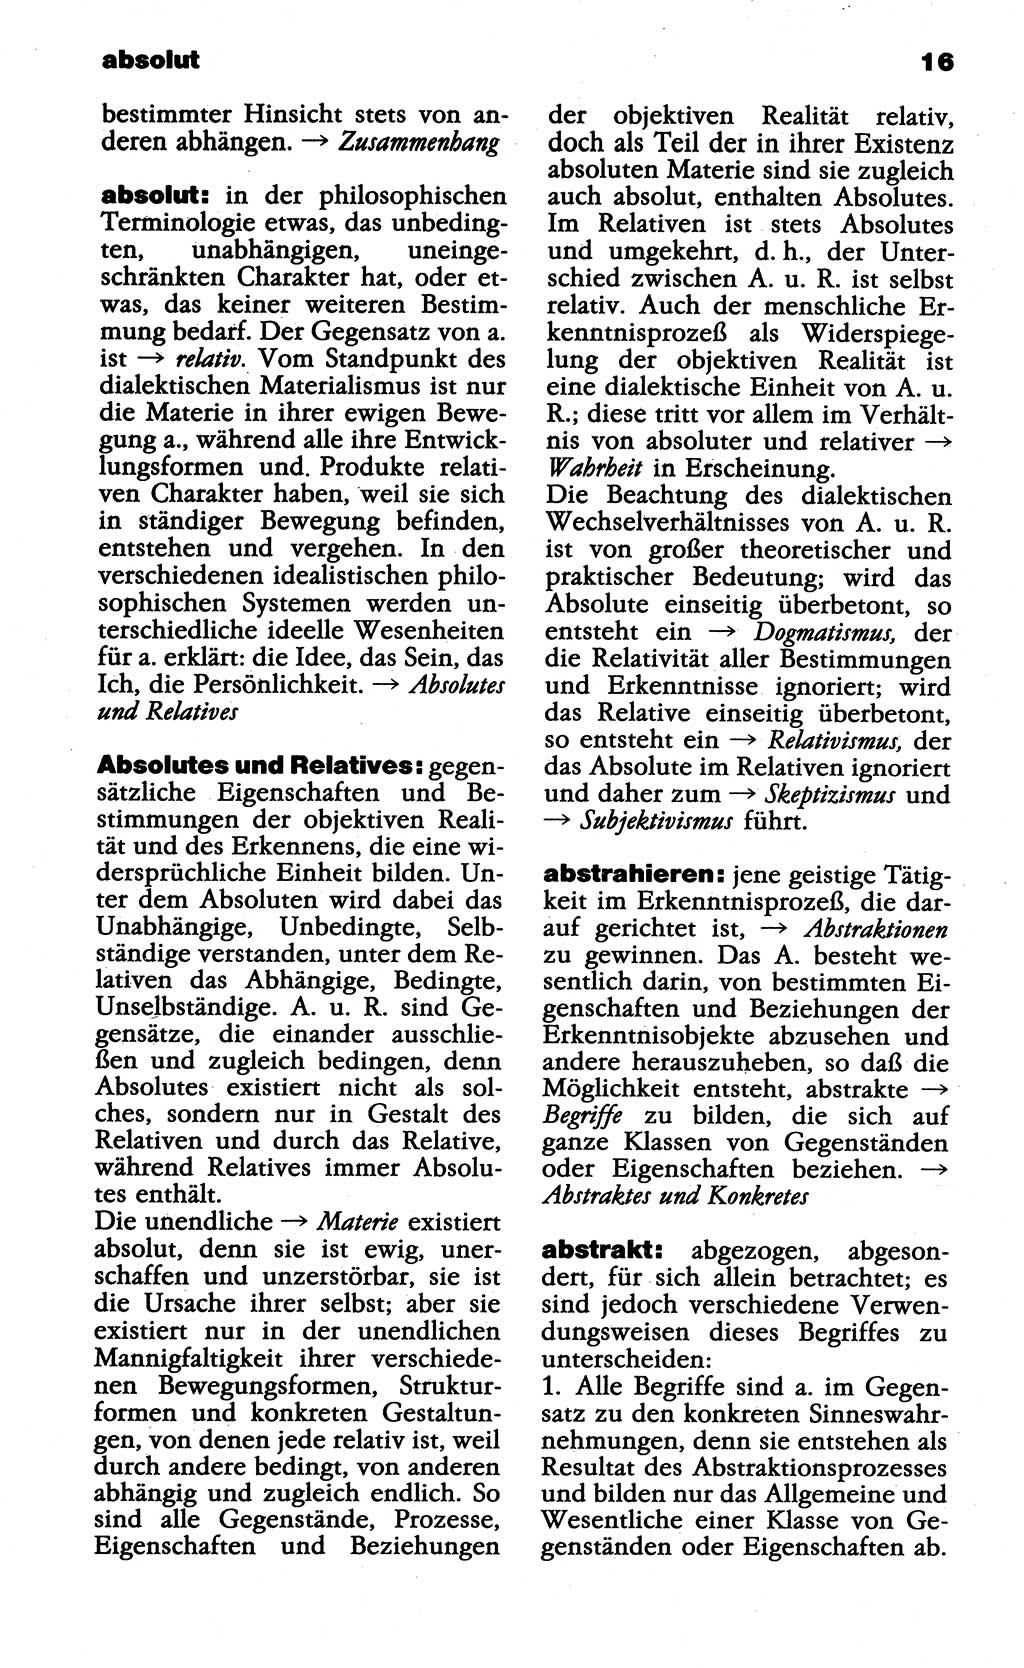 Wörterbuch der marxistisch-leninistischen Philosophie [Deutsche Demokratische Republik (DDR)] 1985, Seite 16 (Wb. ML Phil. DDR 1985, S. 16)